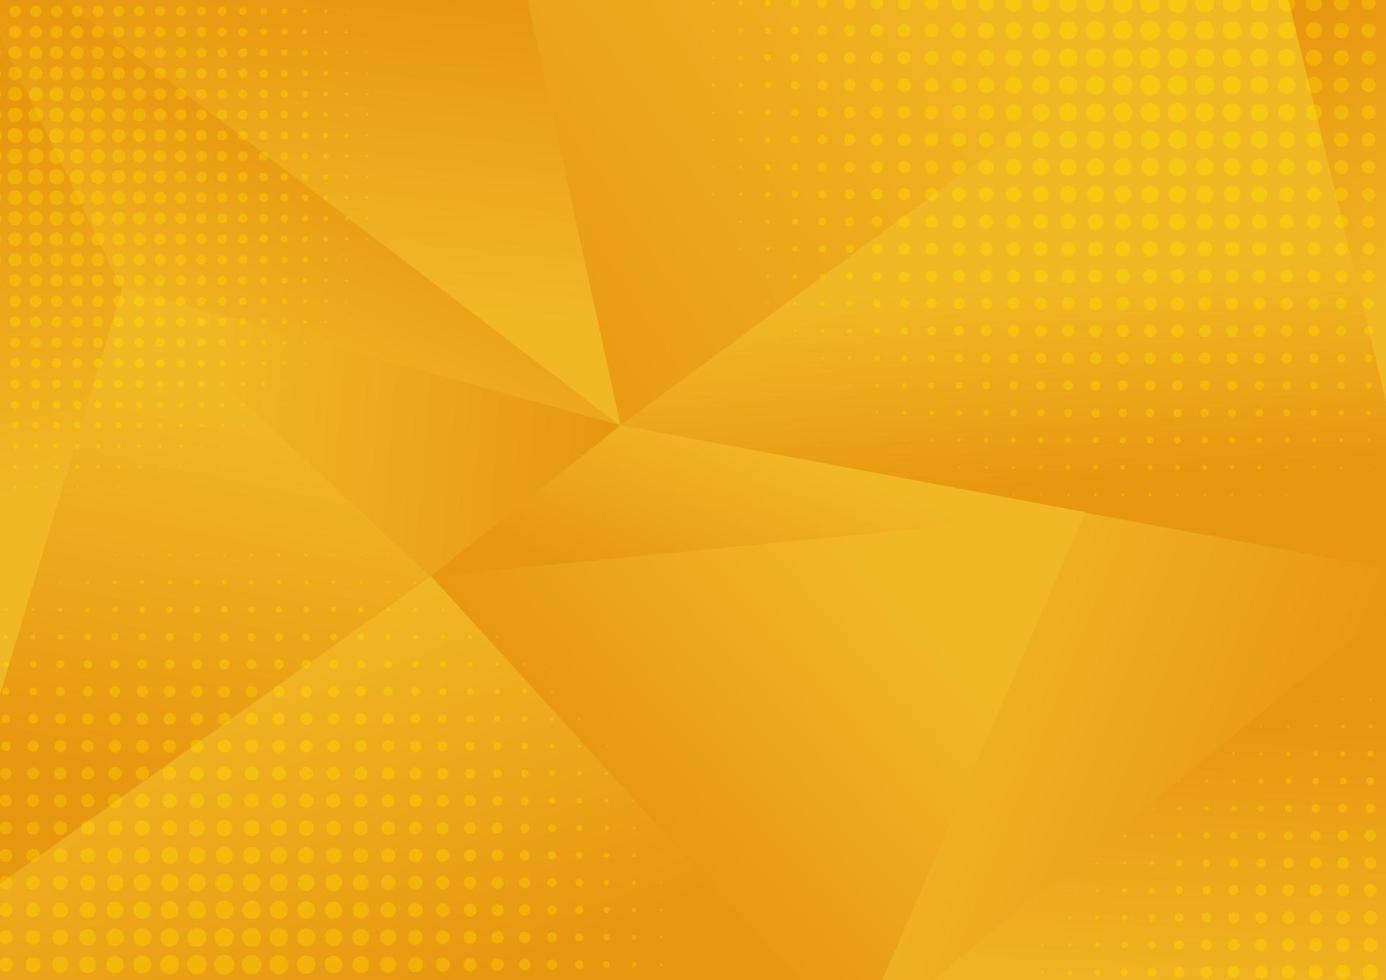 abstrakt gul låg polygon geometrisk bestående av trianglar i olika storlekar och färger bakgrund med halvton vektor